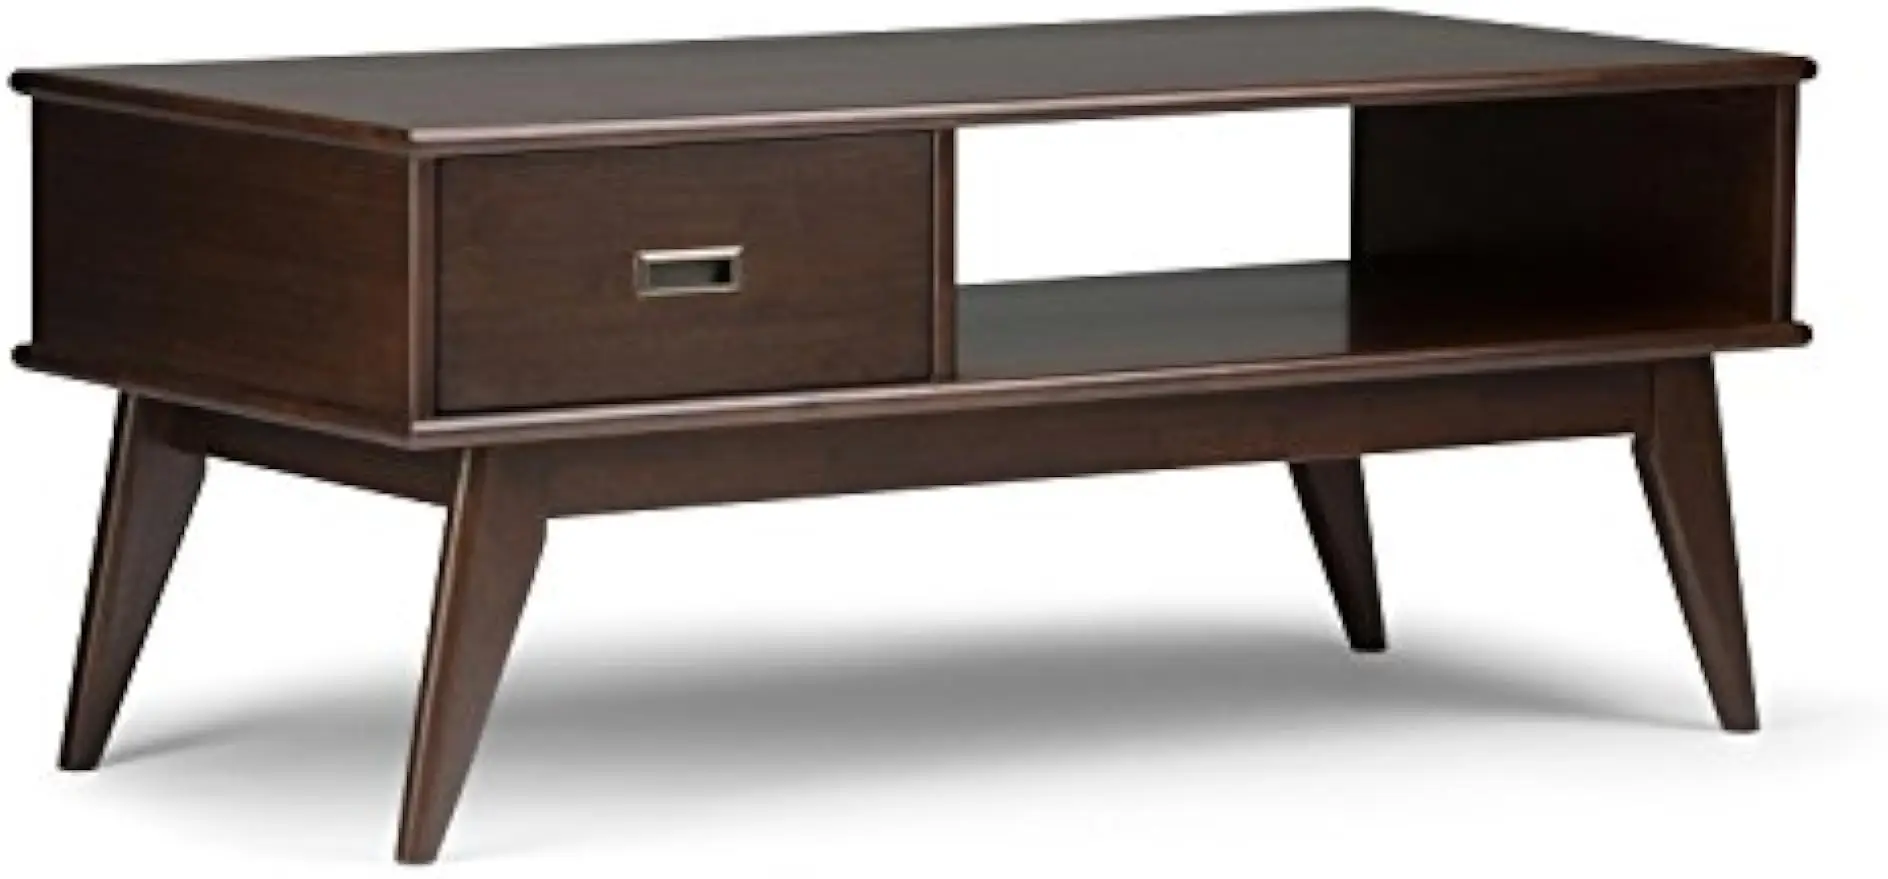 

Однотонный кофейный столик Draper из твердой древесины, 48 дюймов, широкий прямоугольный, коричневого цвета, для гостиной и семейной комнаты